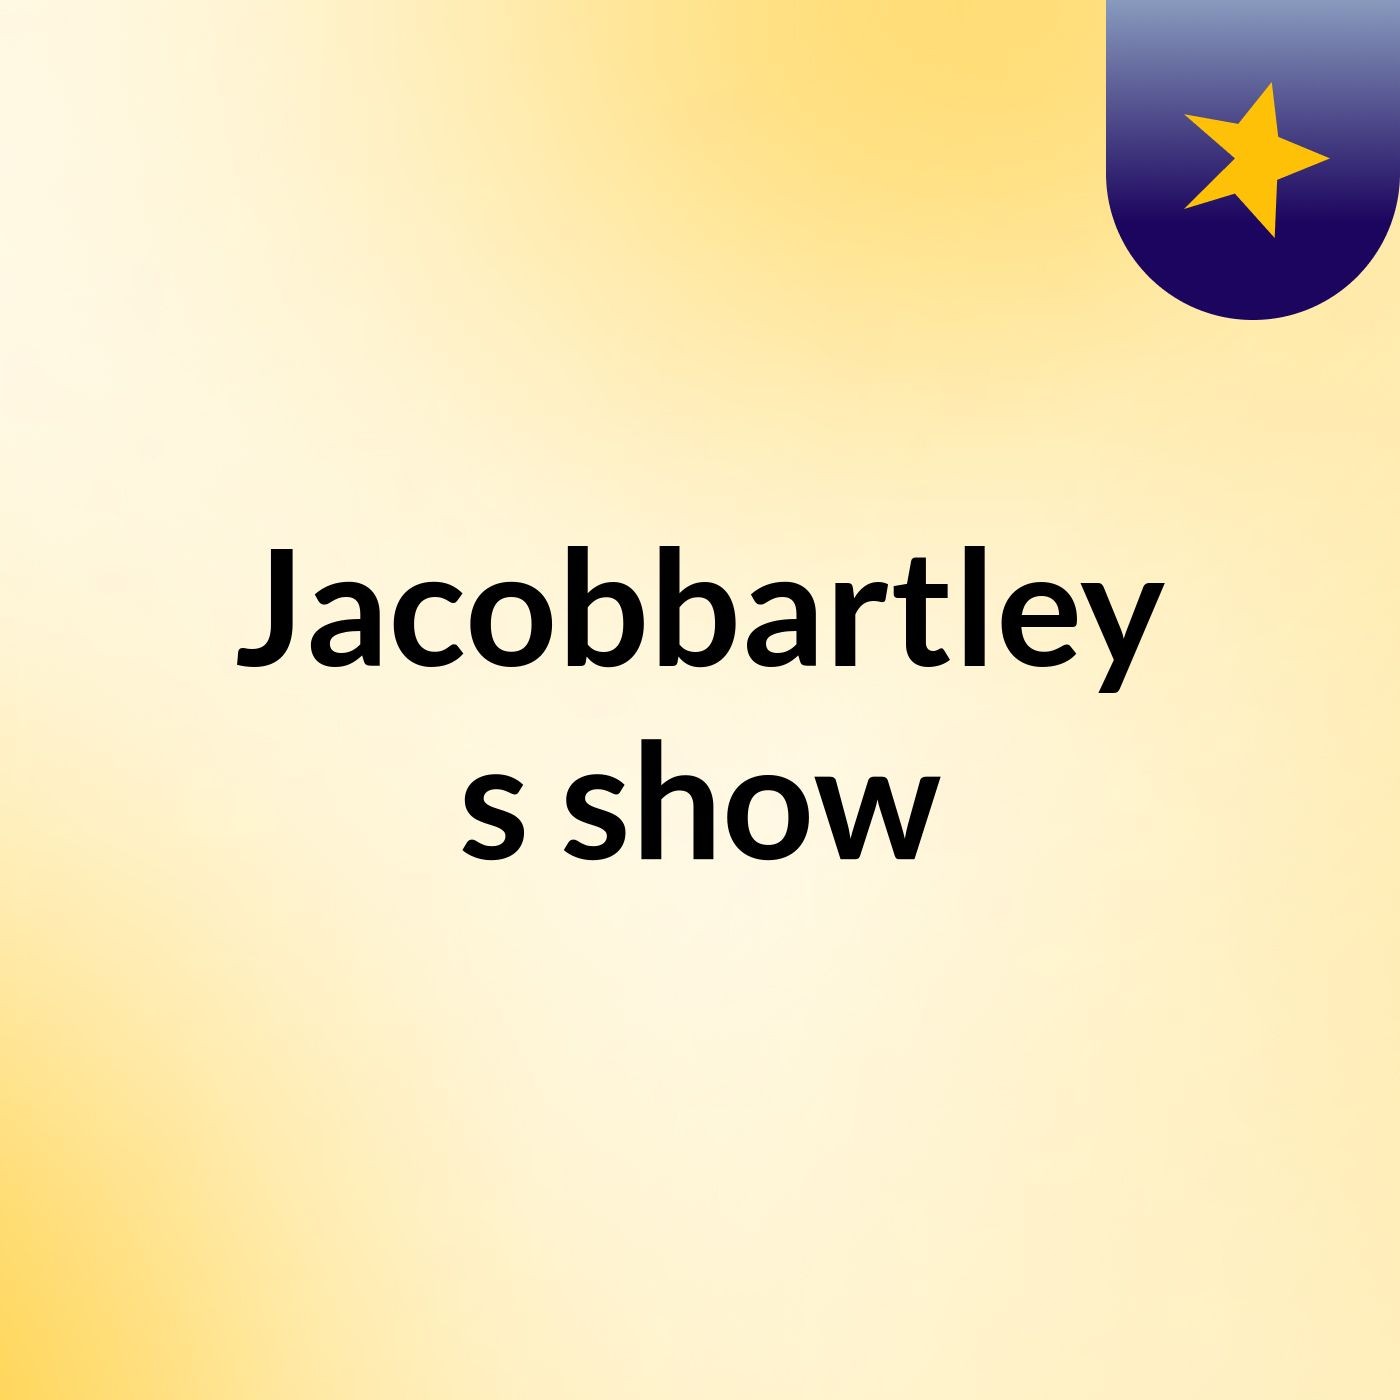 Episode 23 - Jacobbartley's show